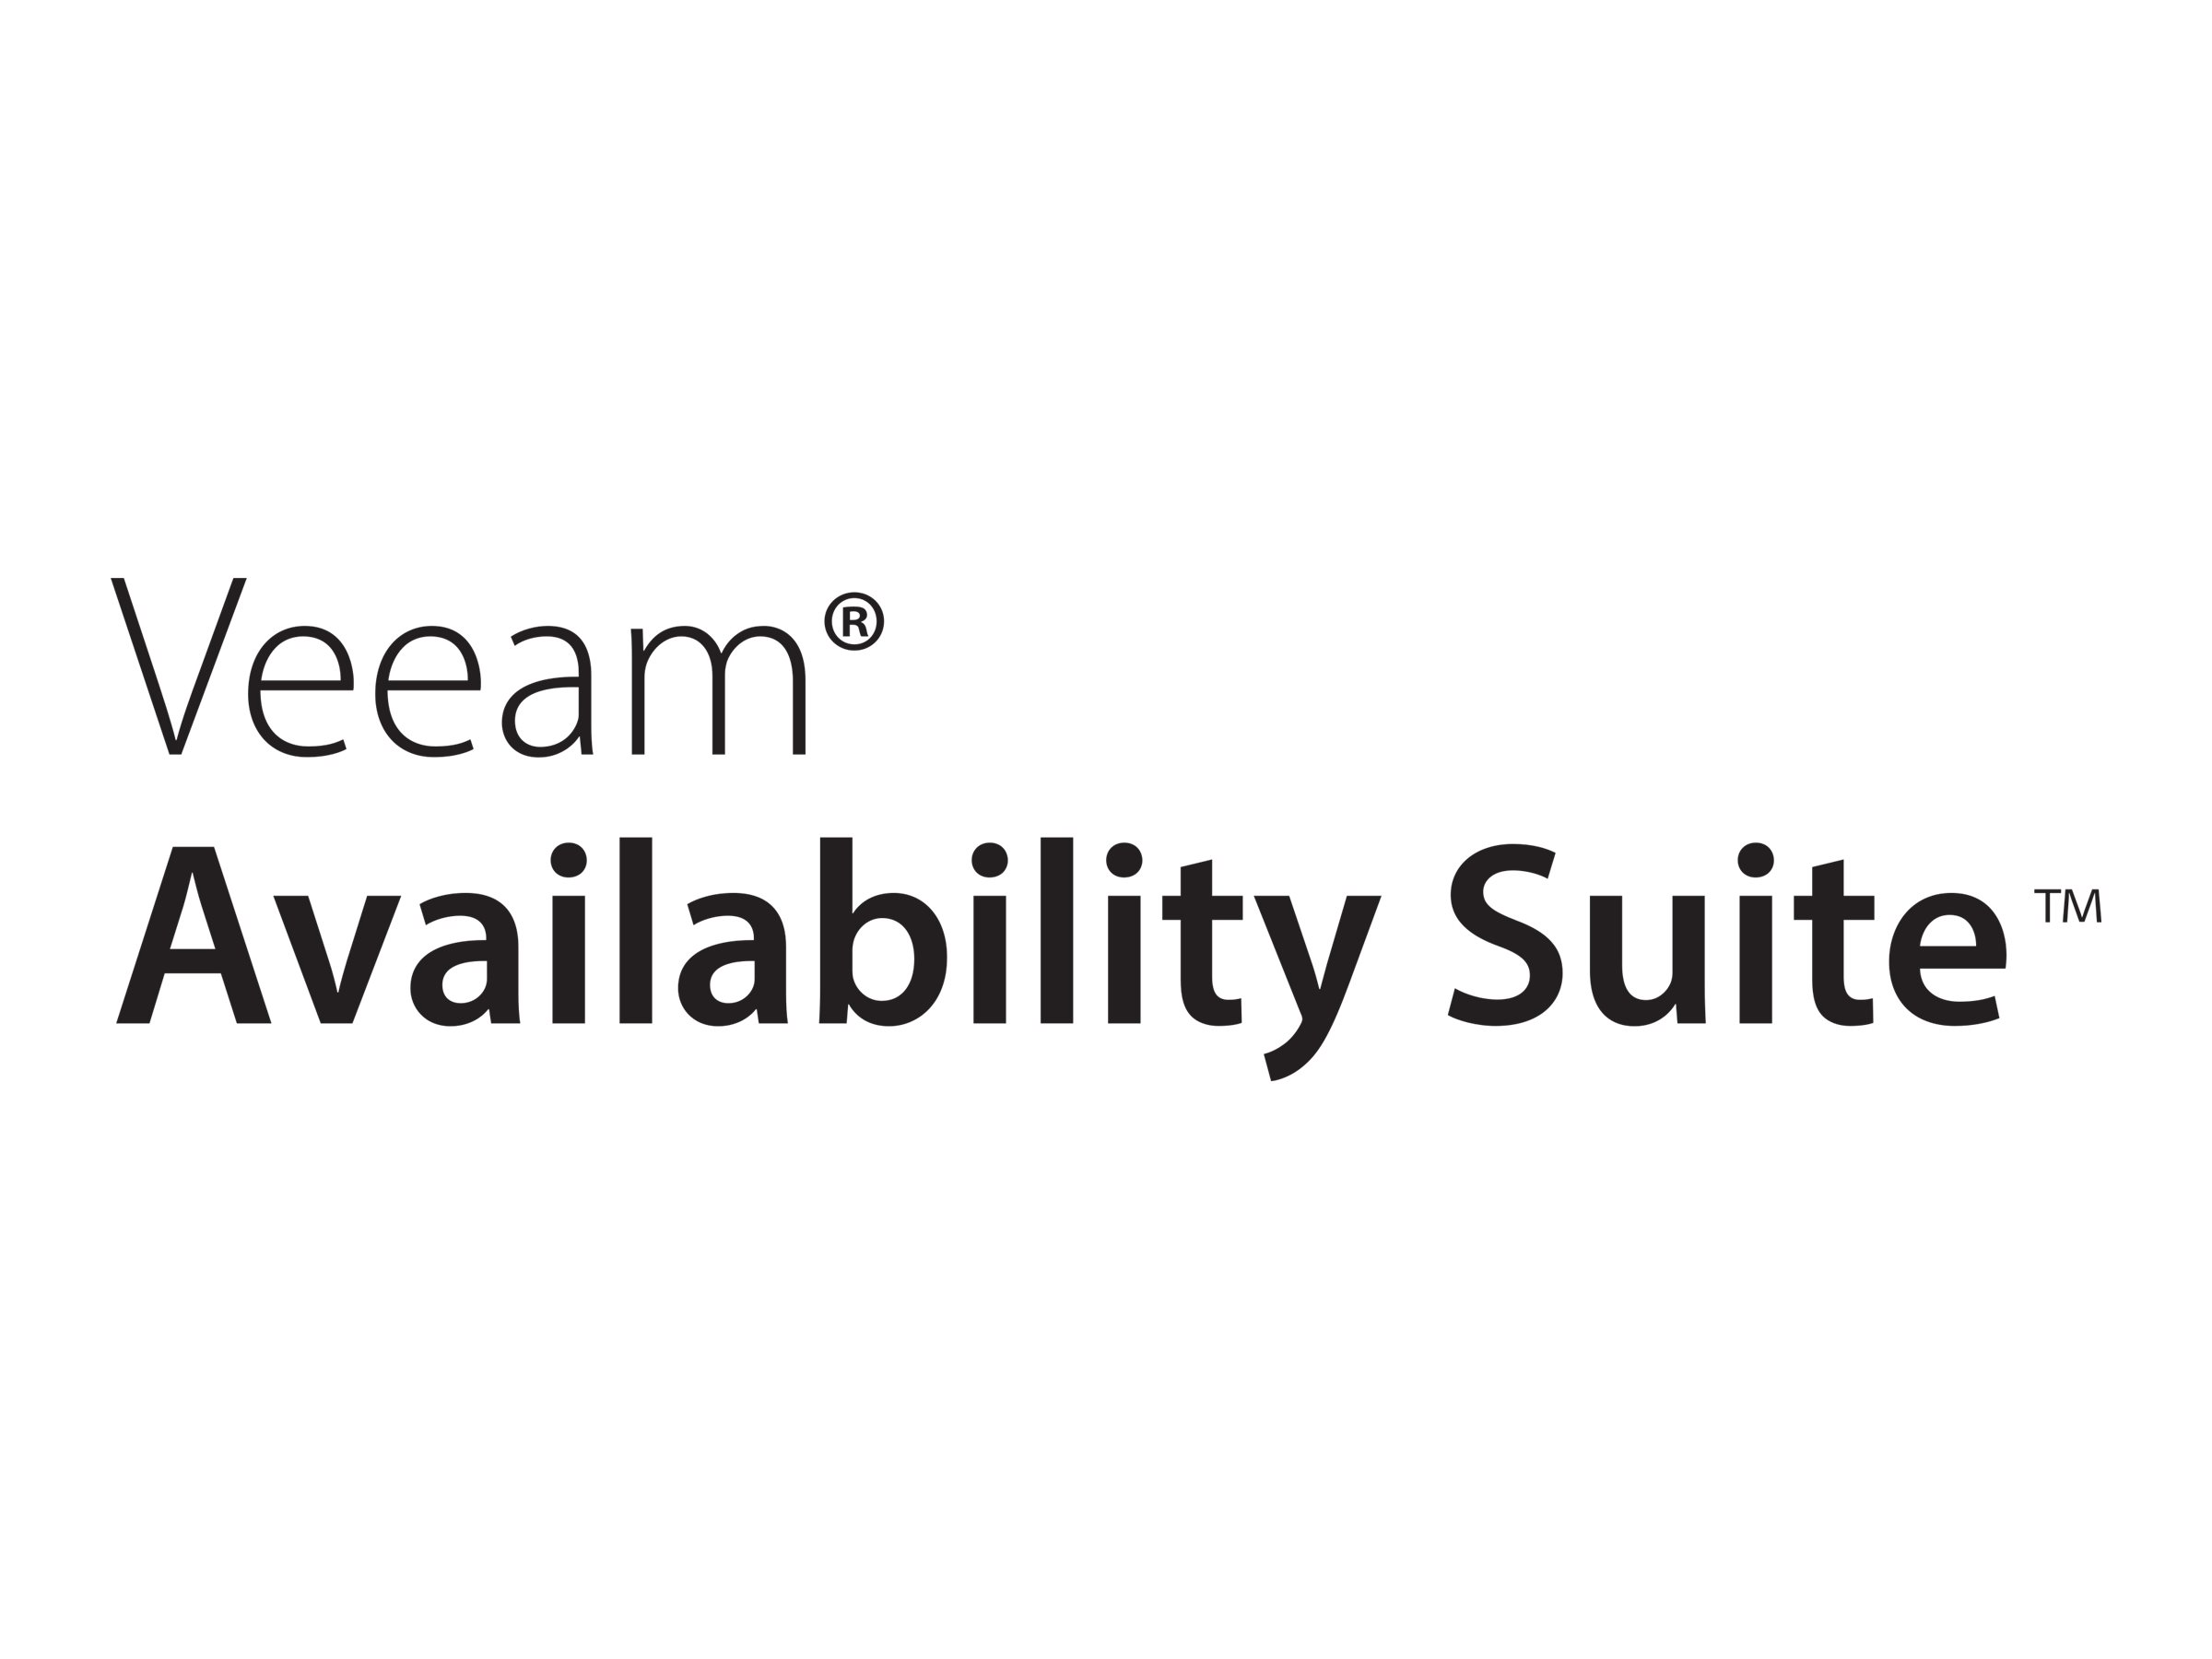 Veeam Availability Suite - Lizenz mit Vorauszahlung (1 Jahr) + Production Support - 1 Anschluss - Öffentlicher Sektor